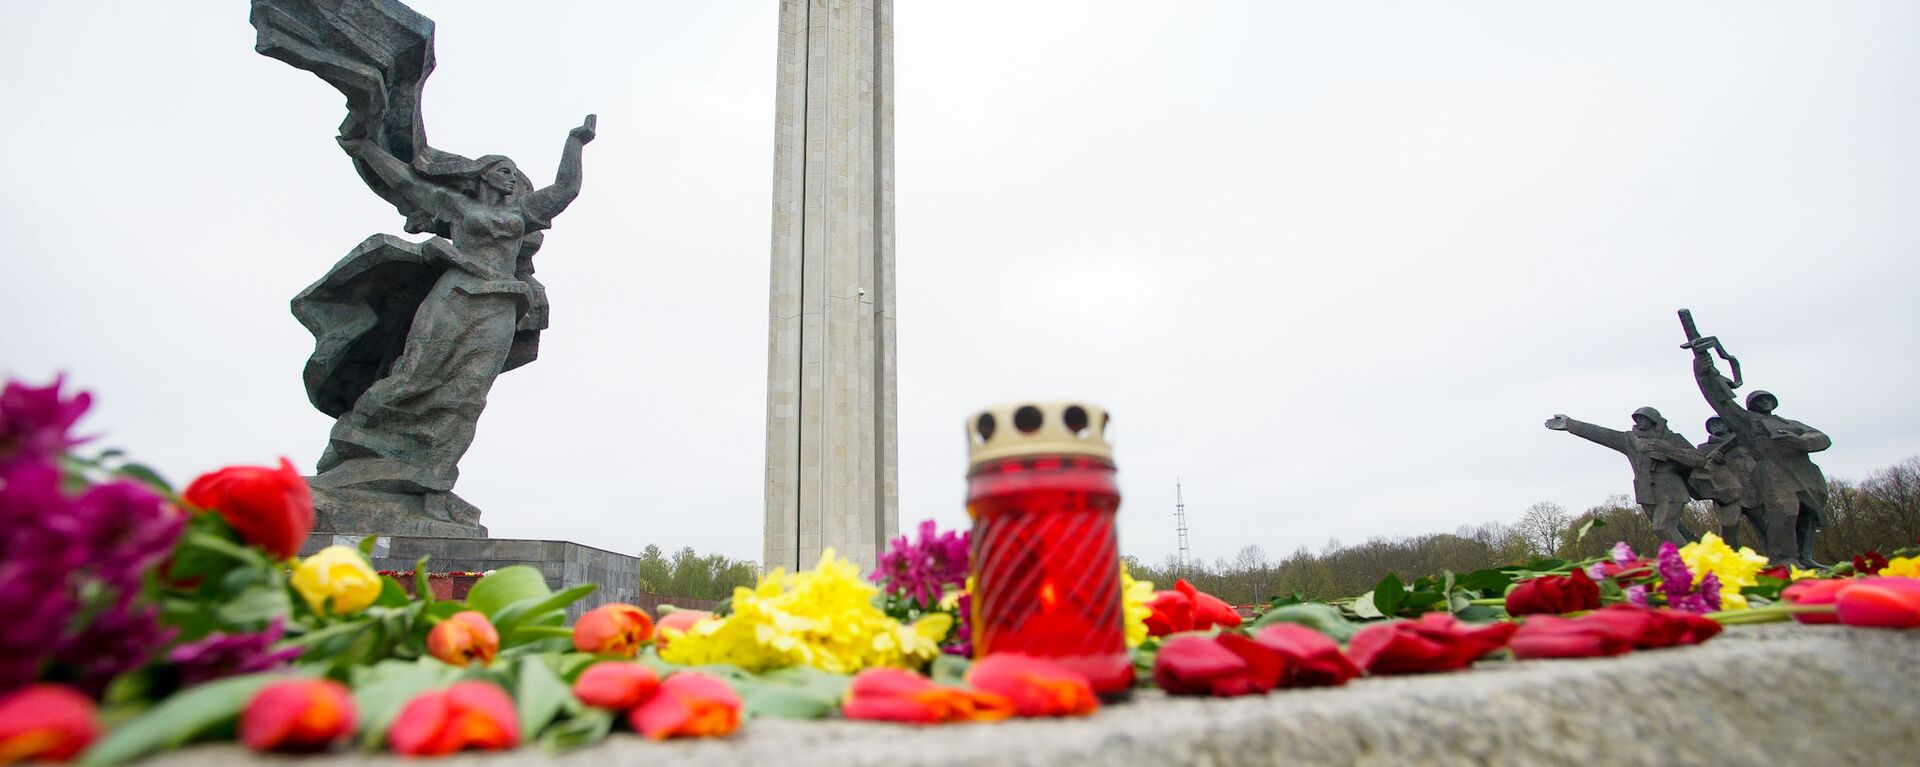 Цветы у памятника Освободителям в Риге 9 мая - Sputnik Латвия, 1920, 22.10.2020